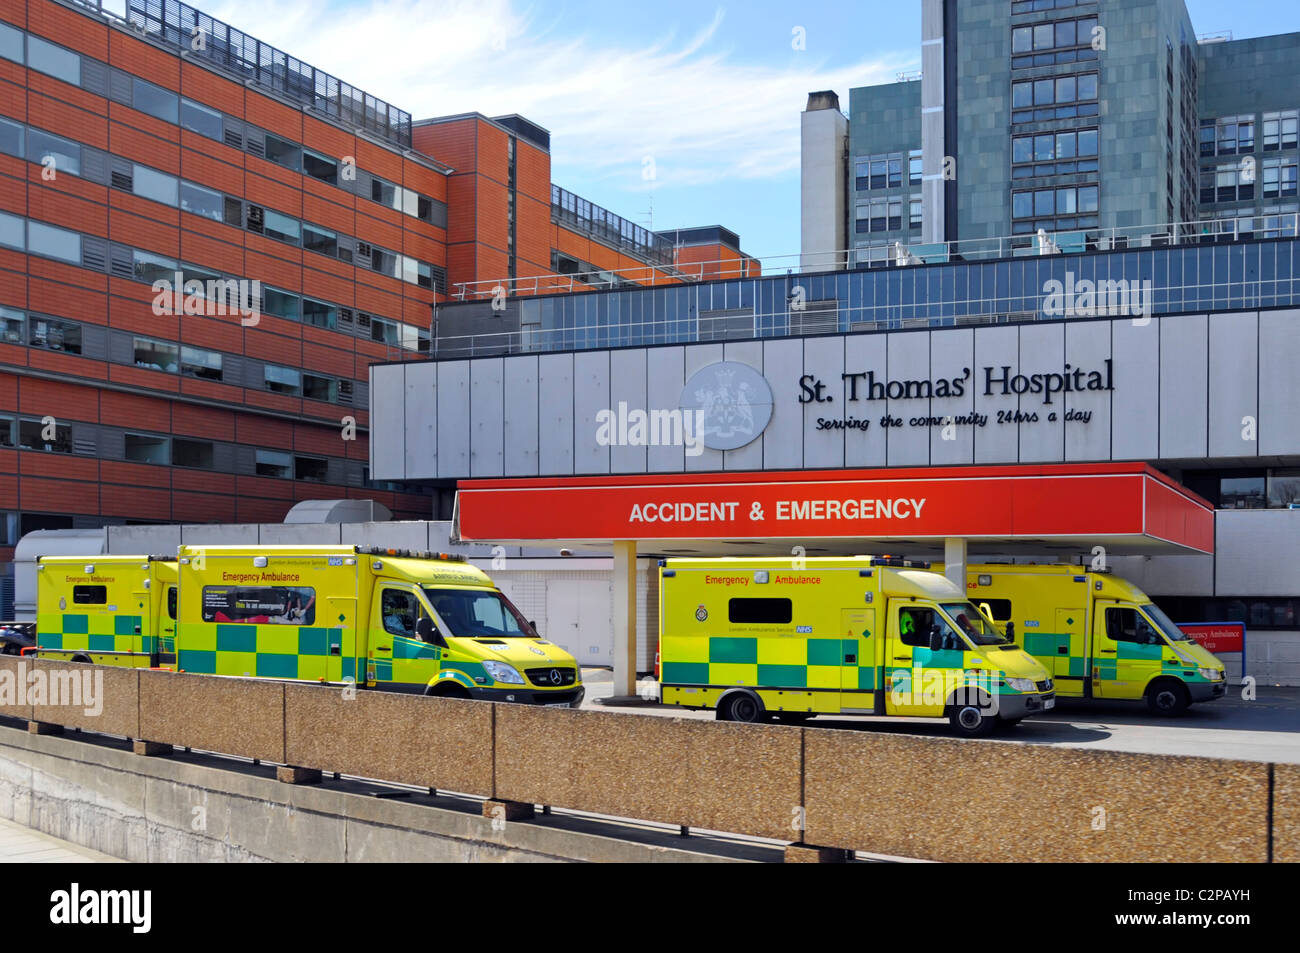 Service des urgences et des accidents occupé par des ambulances livrant des patients garés dans la baie de dépôt à l'extérieur du NHS St Thomas Hospital Londres Angleterre Royaume-Uni Banque D'Images